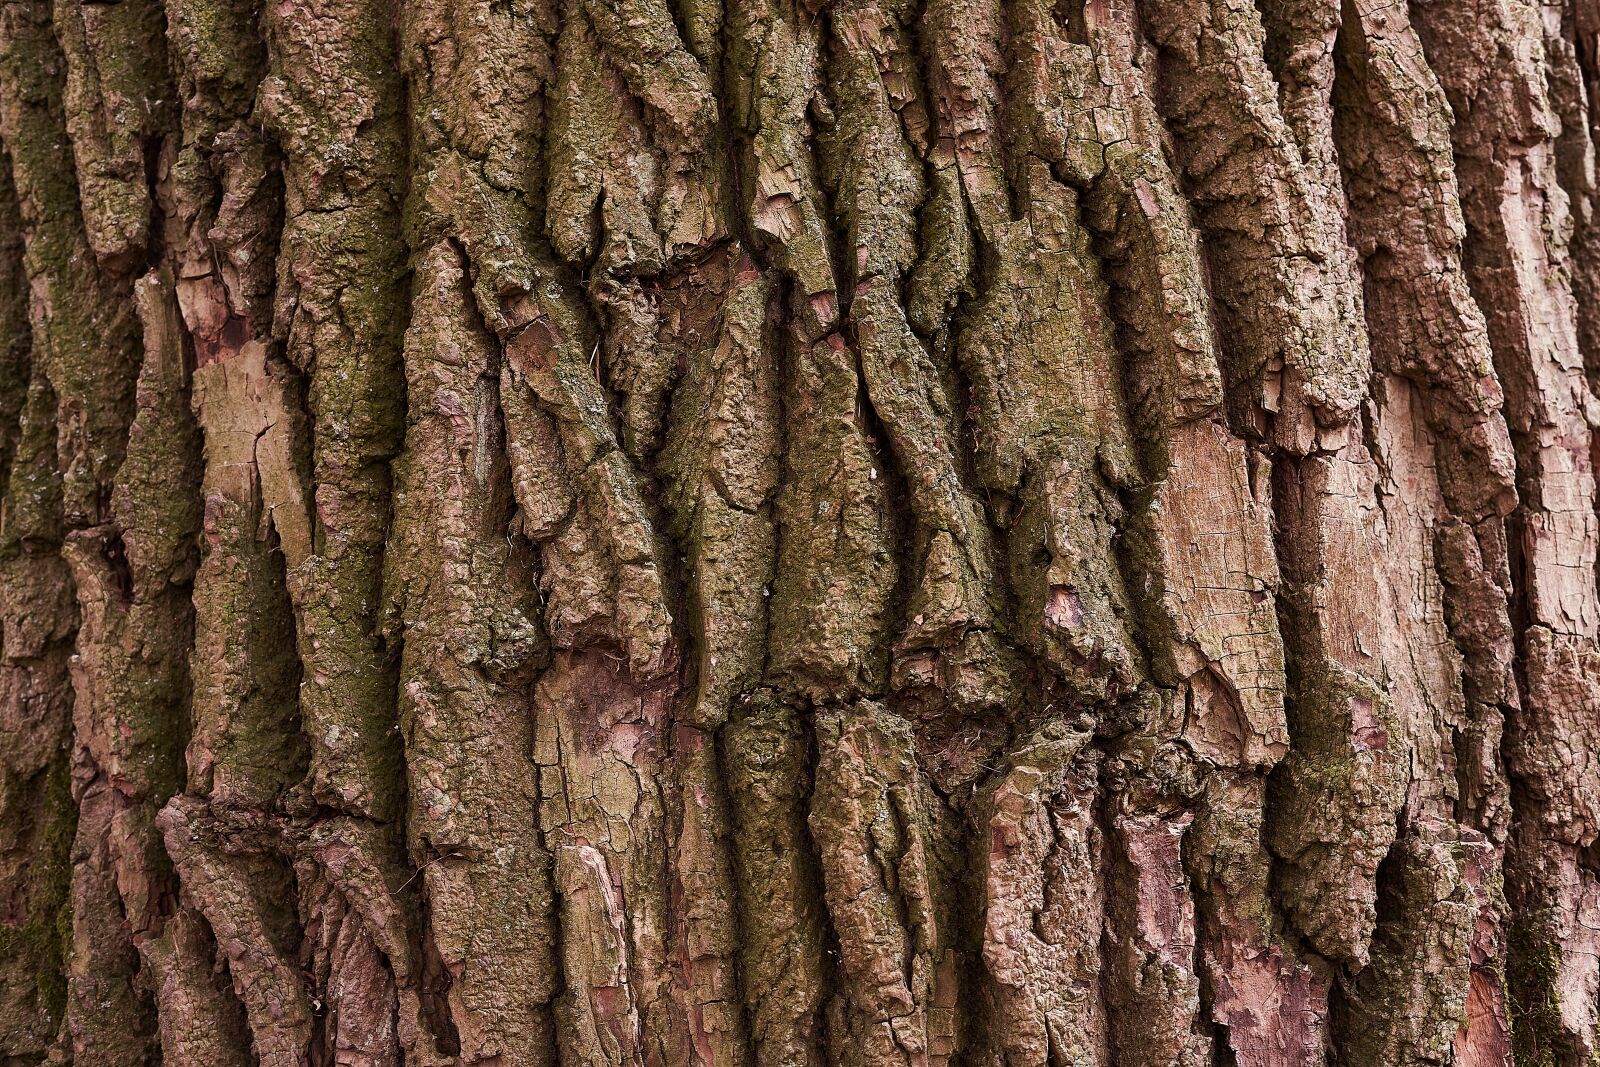 Sony FE 50mm F1.8 sample photo. Tree, bark, nature photography